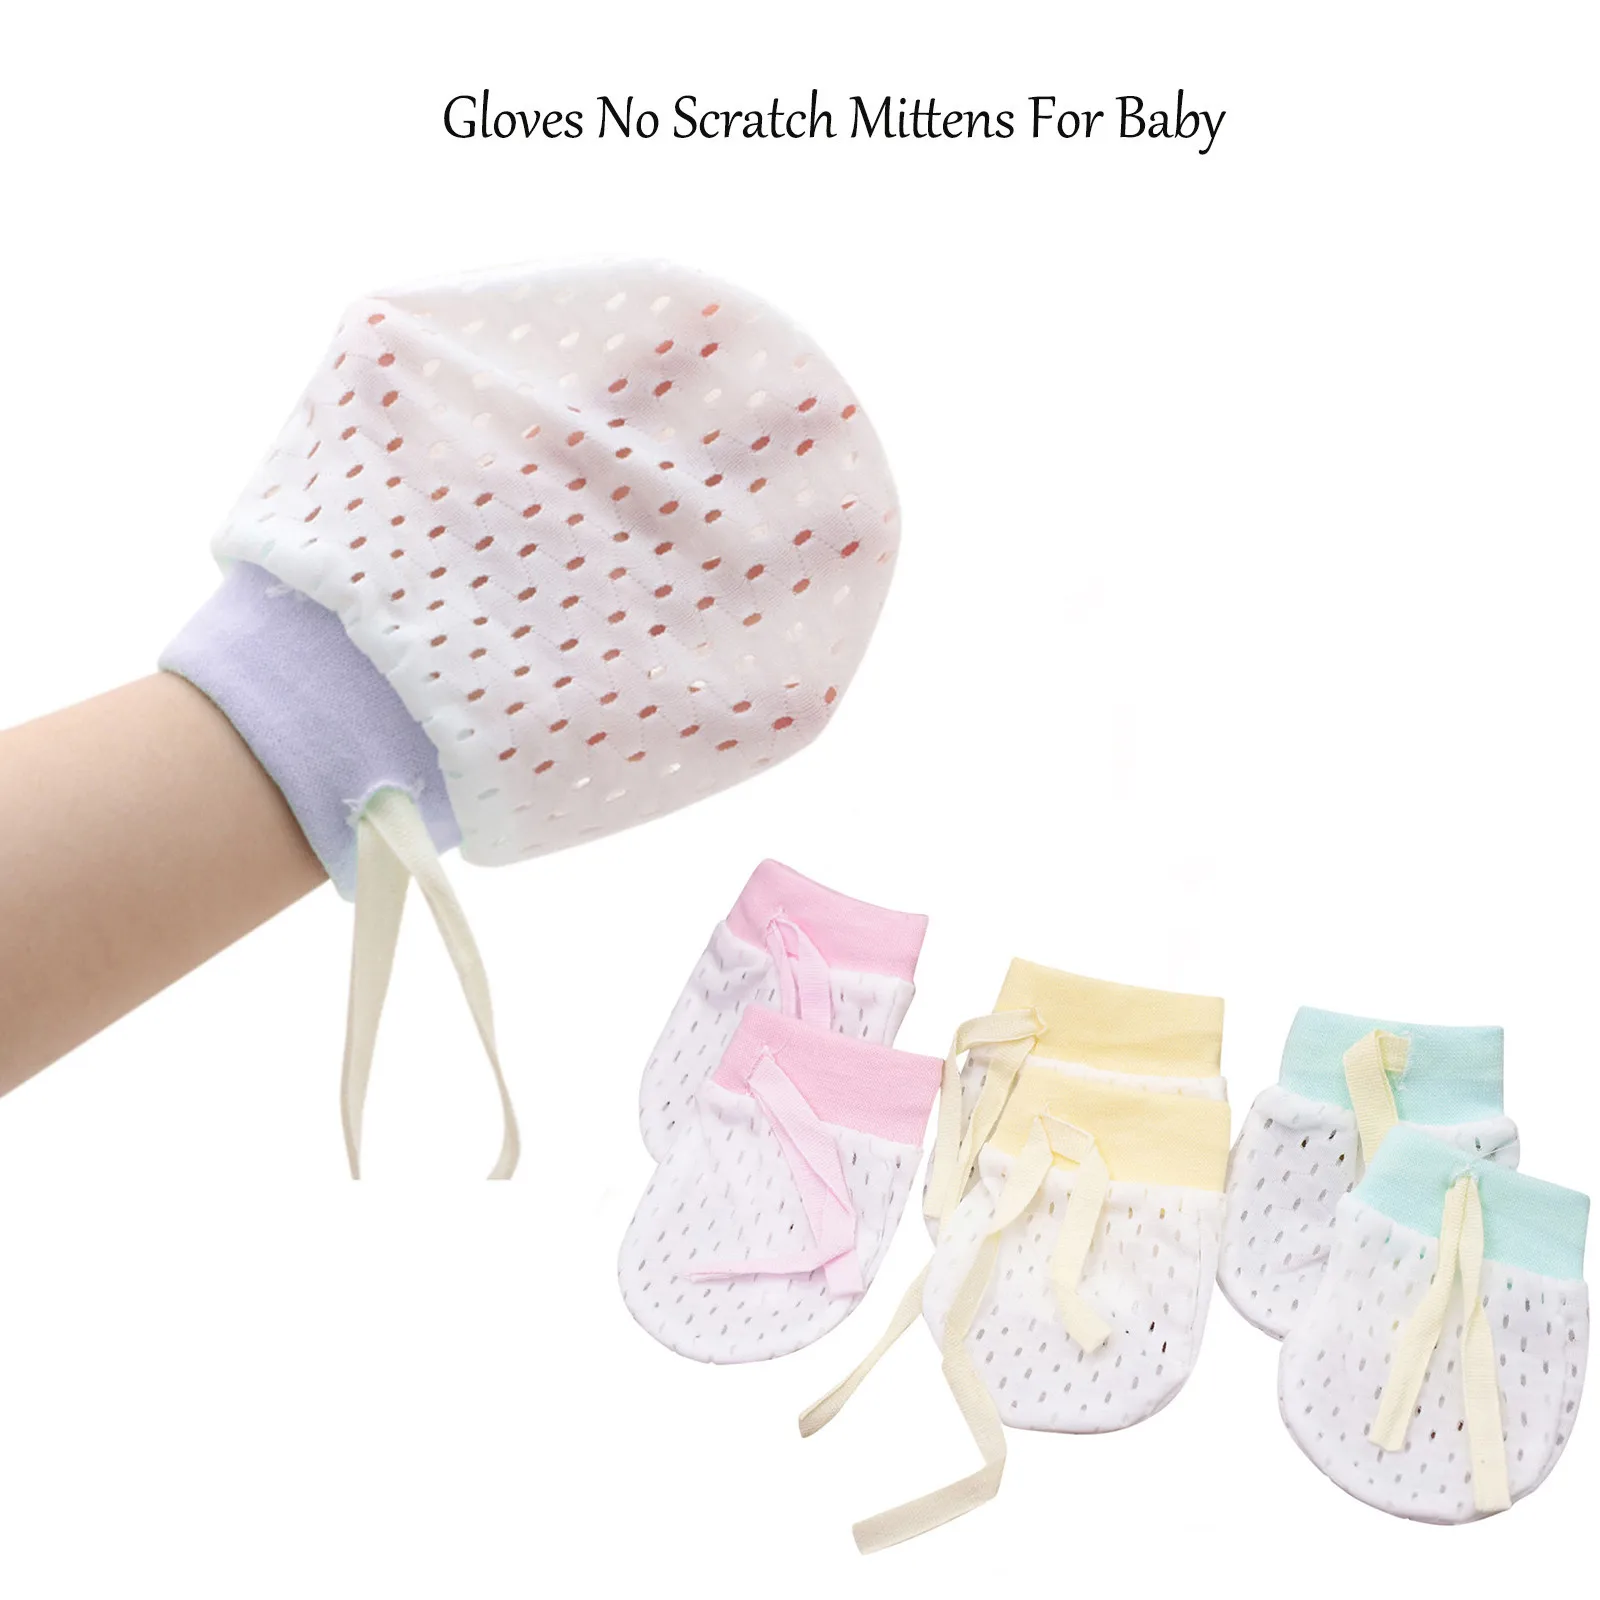 Hifot Guantes de algodón para bebés recién nacidos Sin mitones de Scratch 3 pares Infant Toddler Boys Girls mitones antiarañazos suaves para el cuidado del bebé 